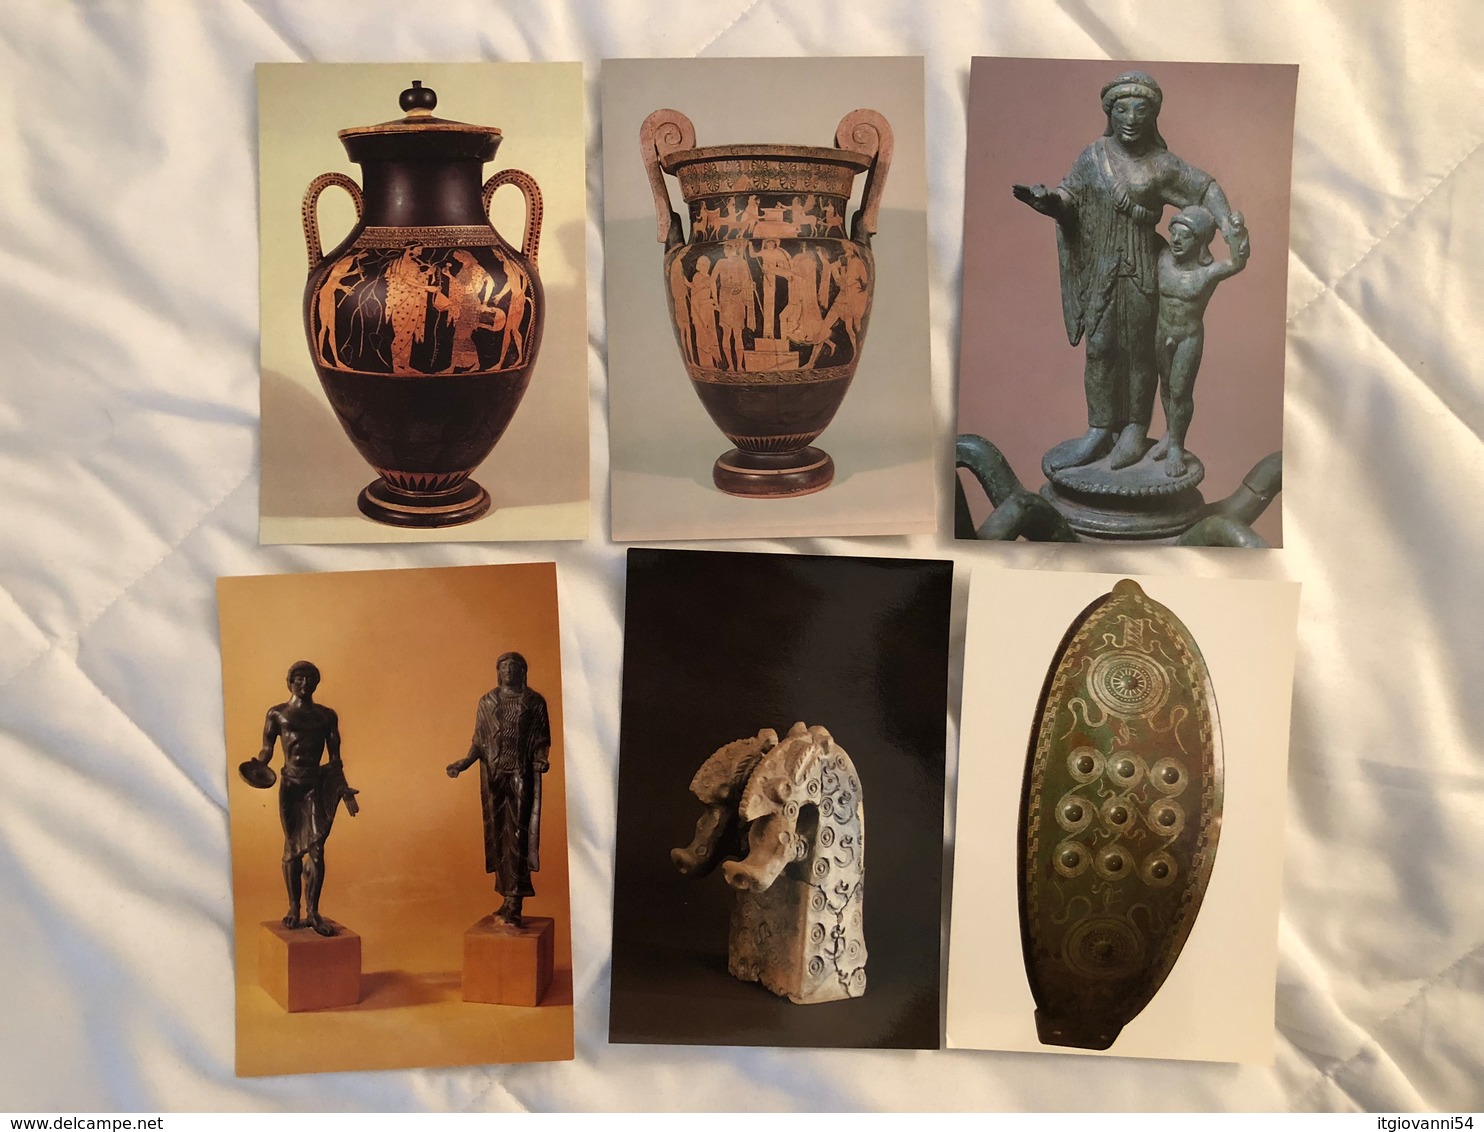 Serie di 45 cartoline del Museo Civico Archeologico di Bologna